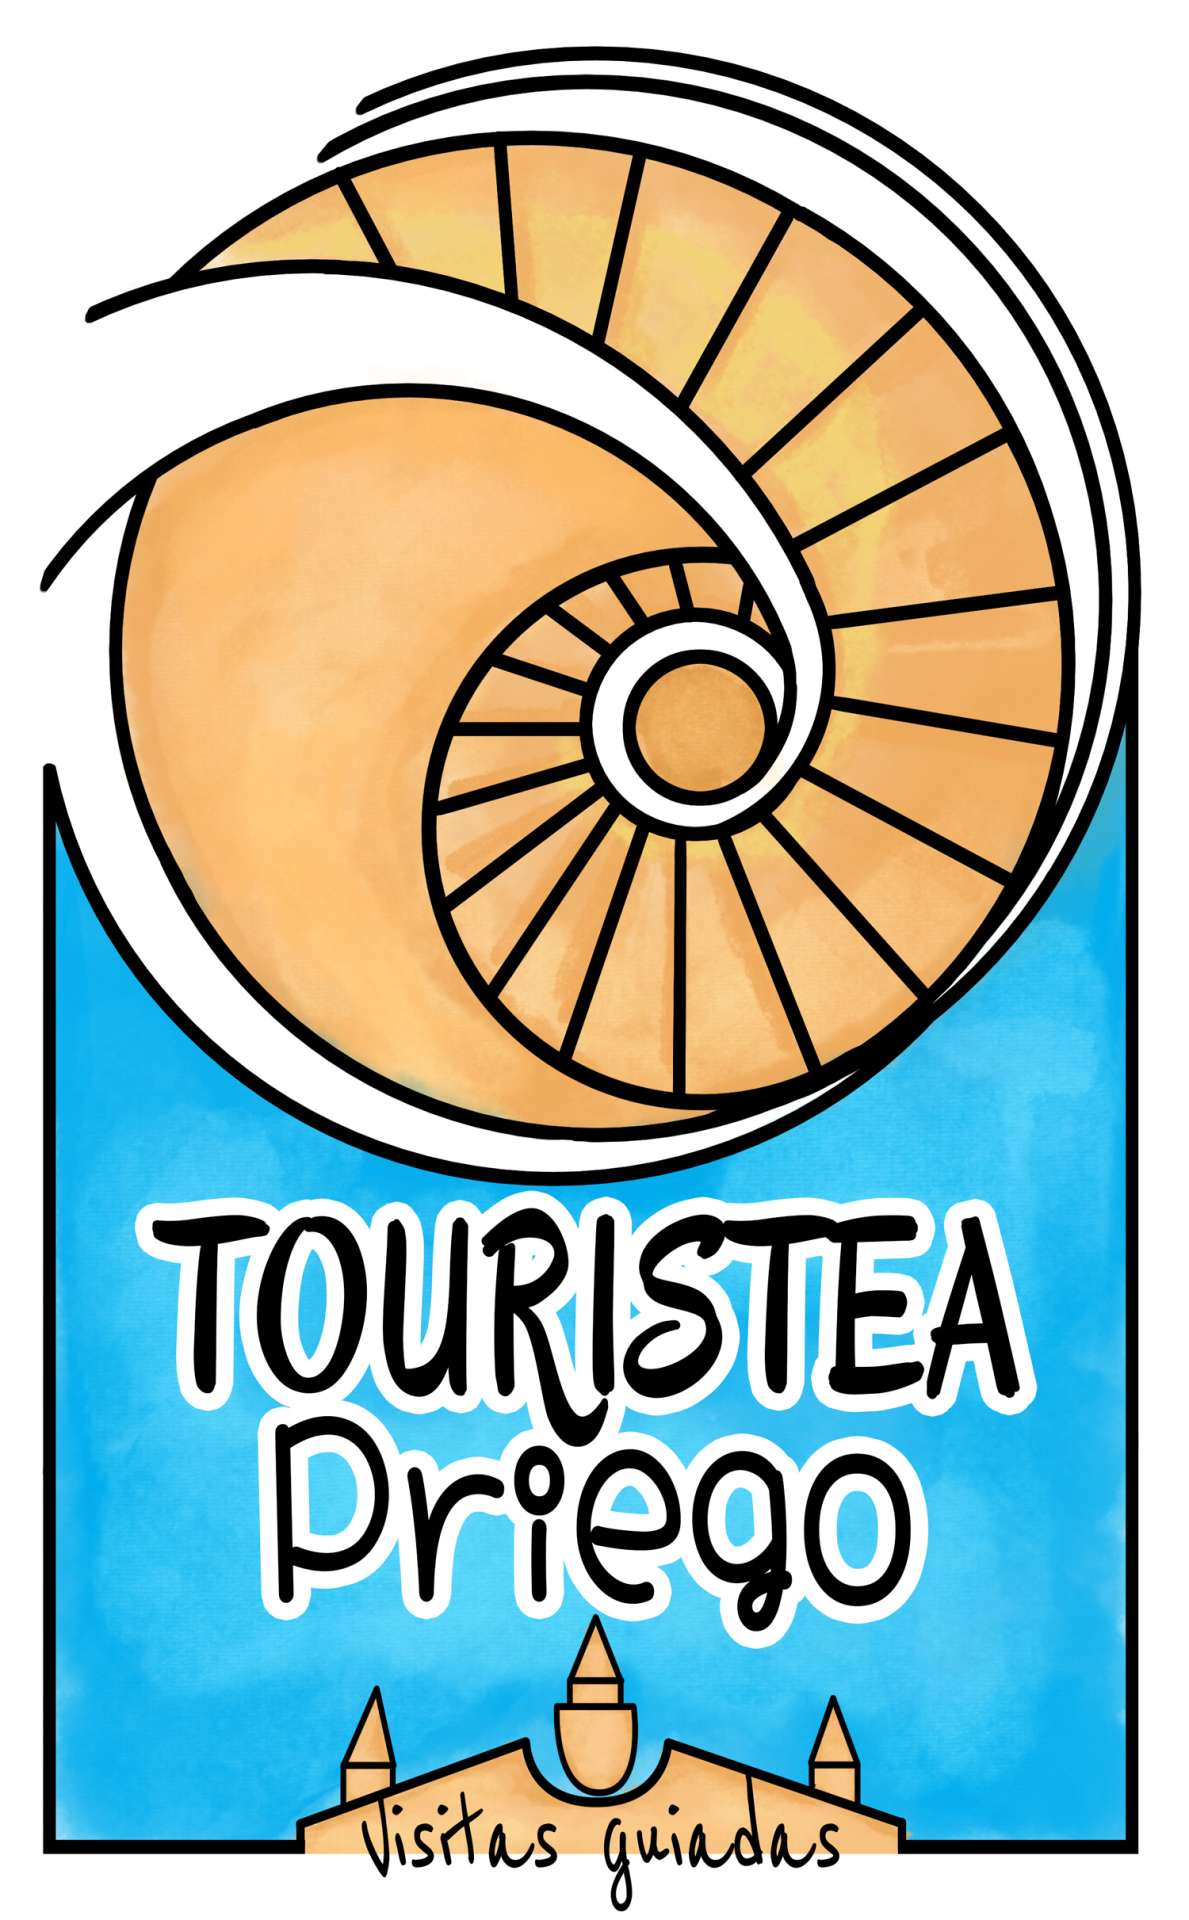 TOURISTEA PRIEGO - Guided Tours